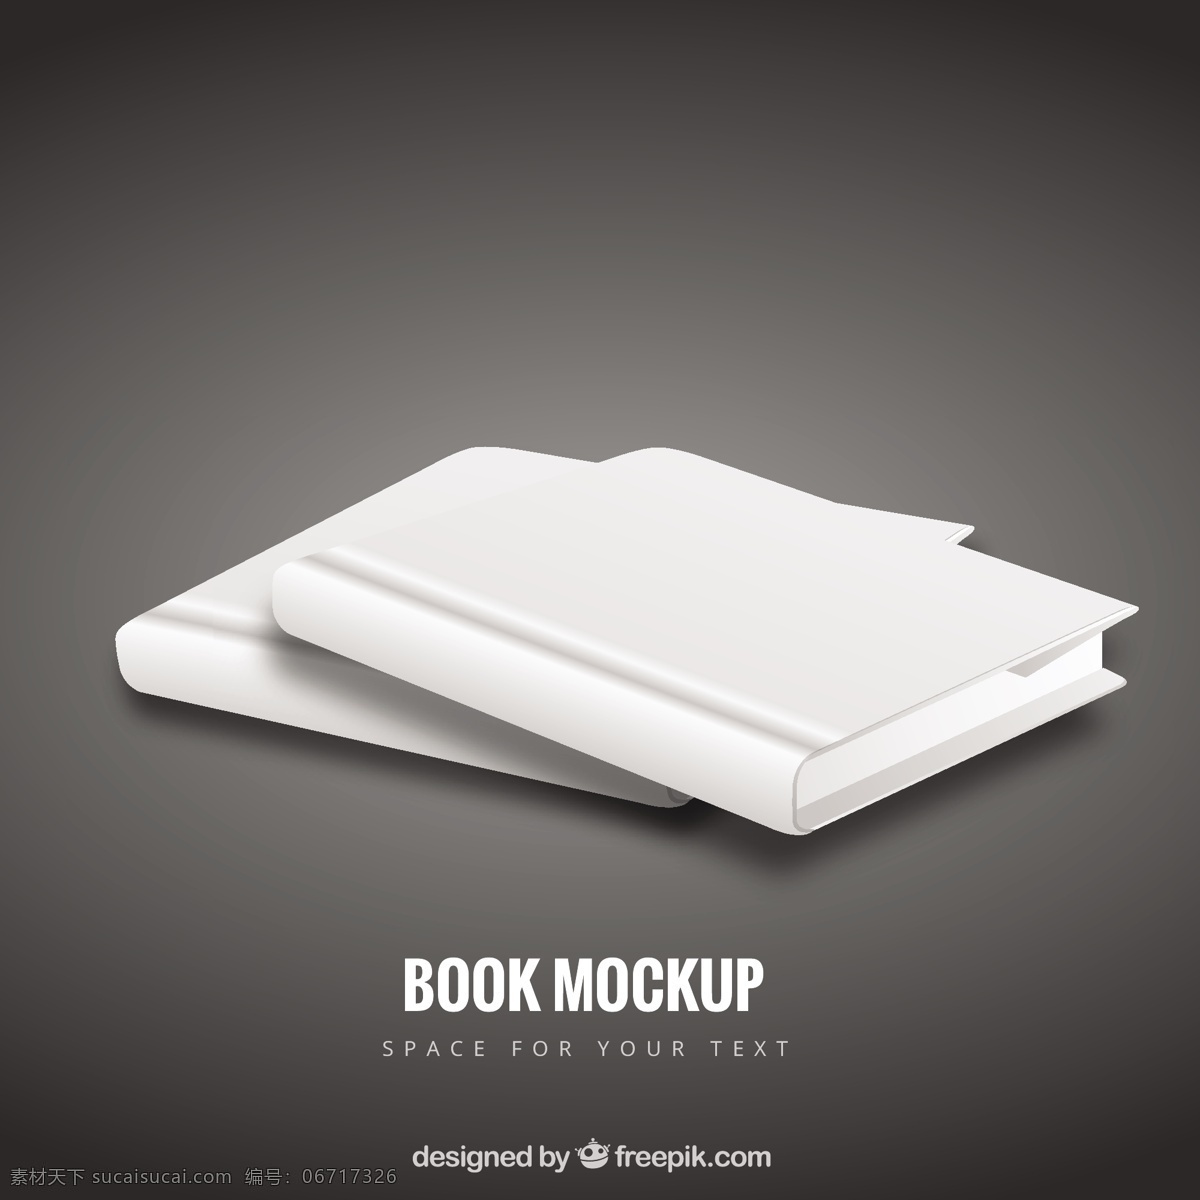 空白的书模型 模型 书 教育 模板 书籍 白 阅读 空白